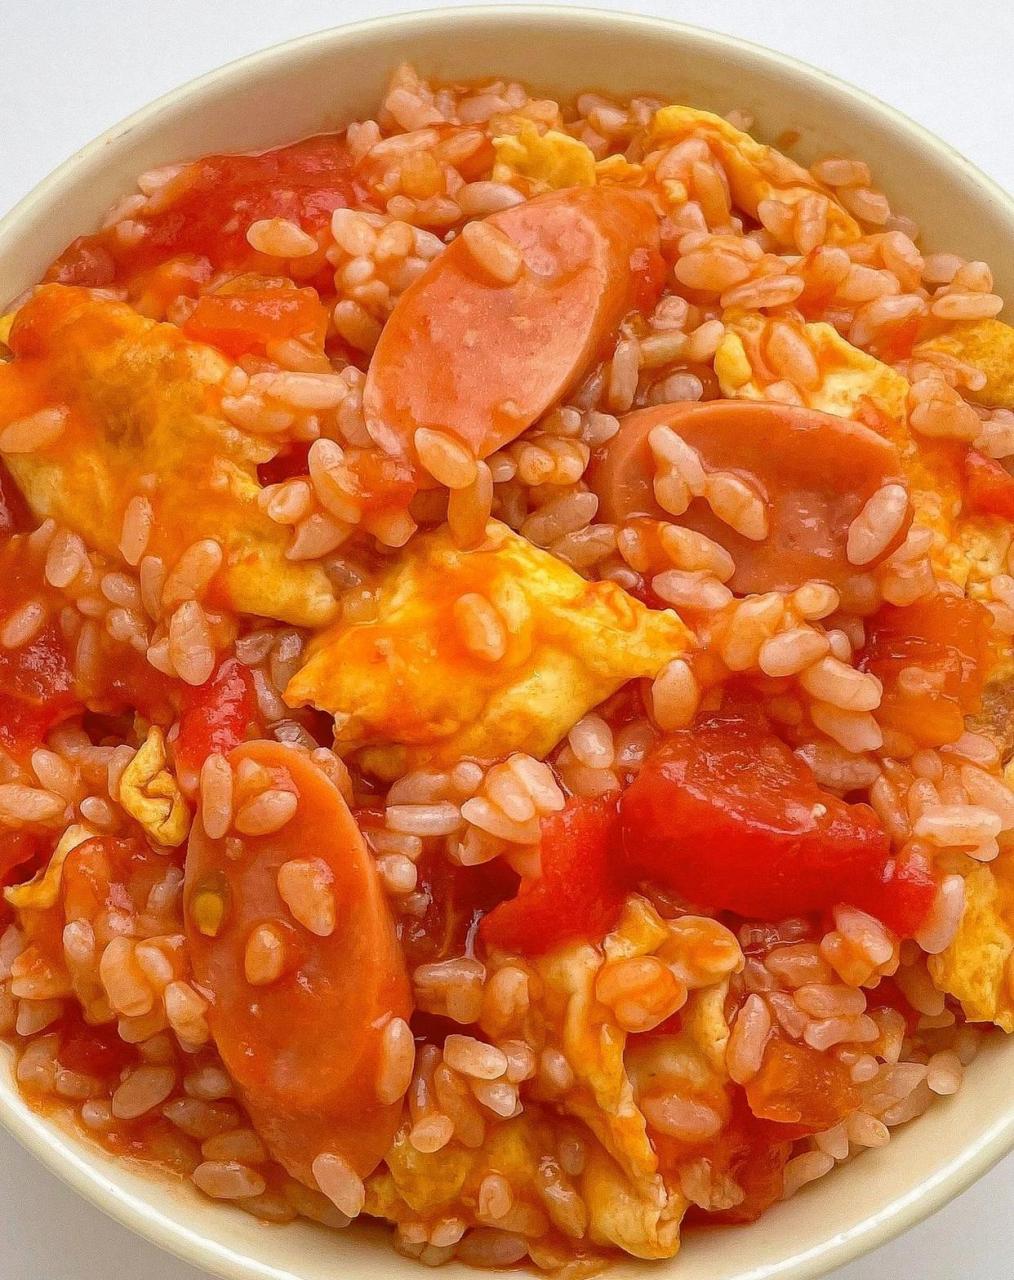 番茄鸡蛋烩饭 02食材 2个鸡蛋,火腿肠,番茄,米饭 996993做法